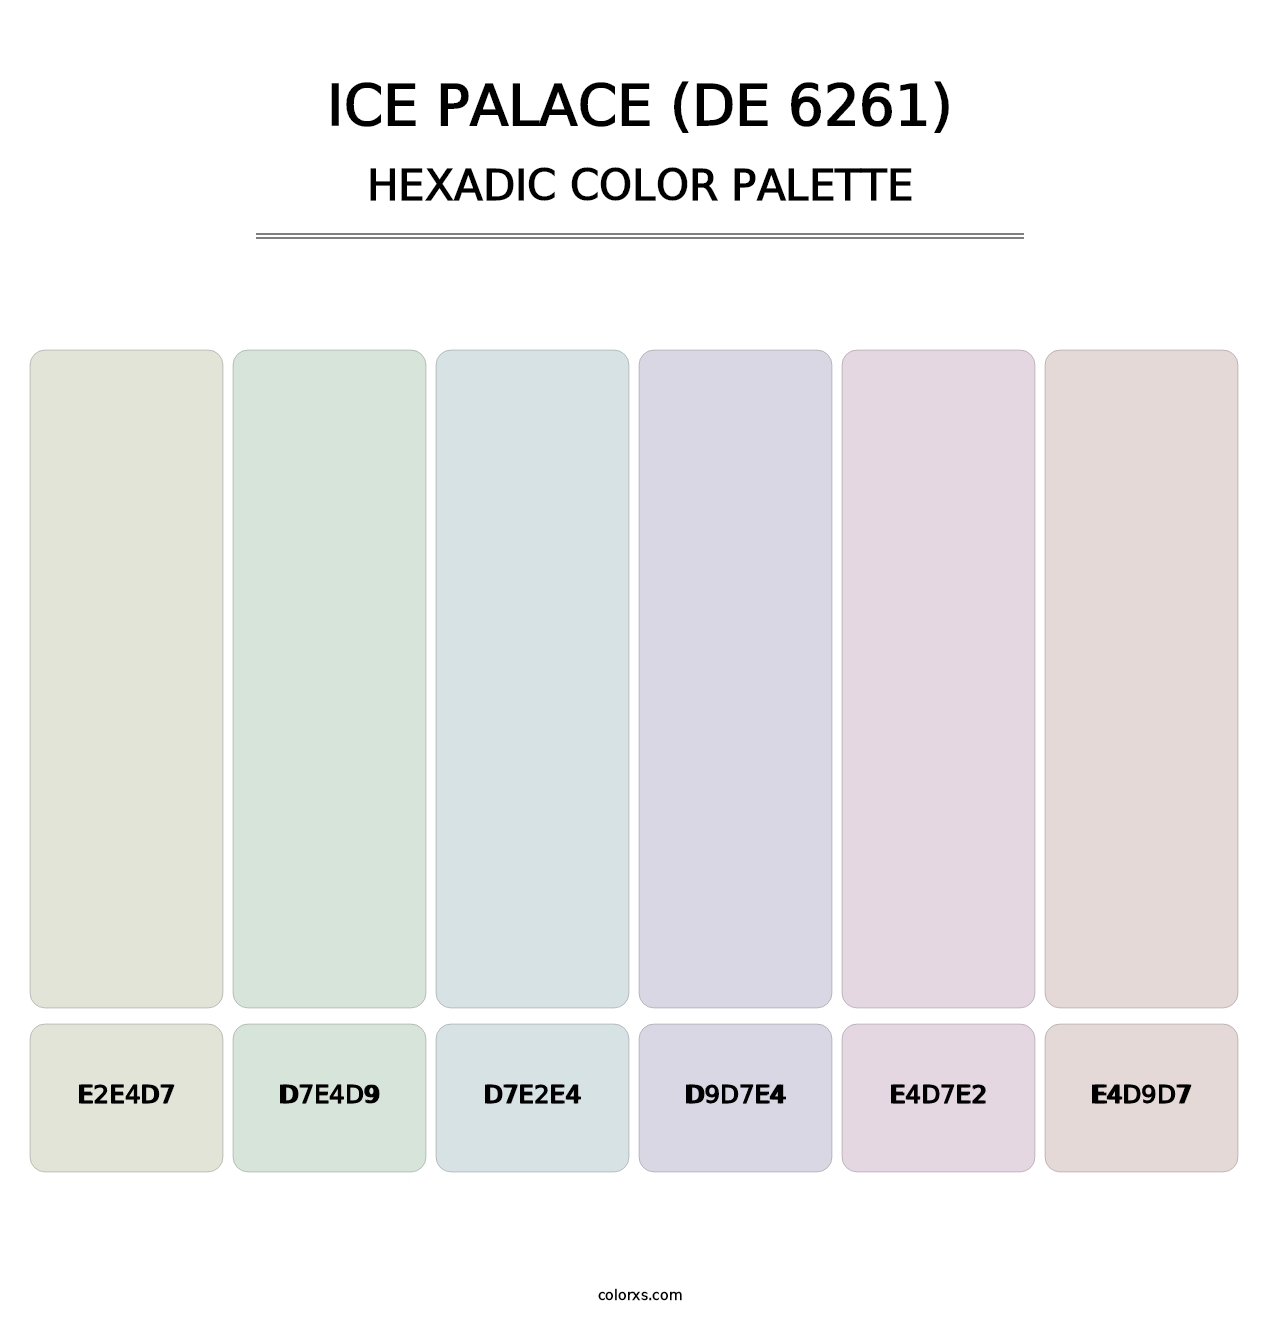 Ice Palace (DE 6261) - Hexadic Color Palette